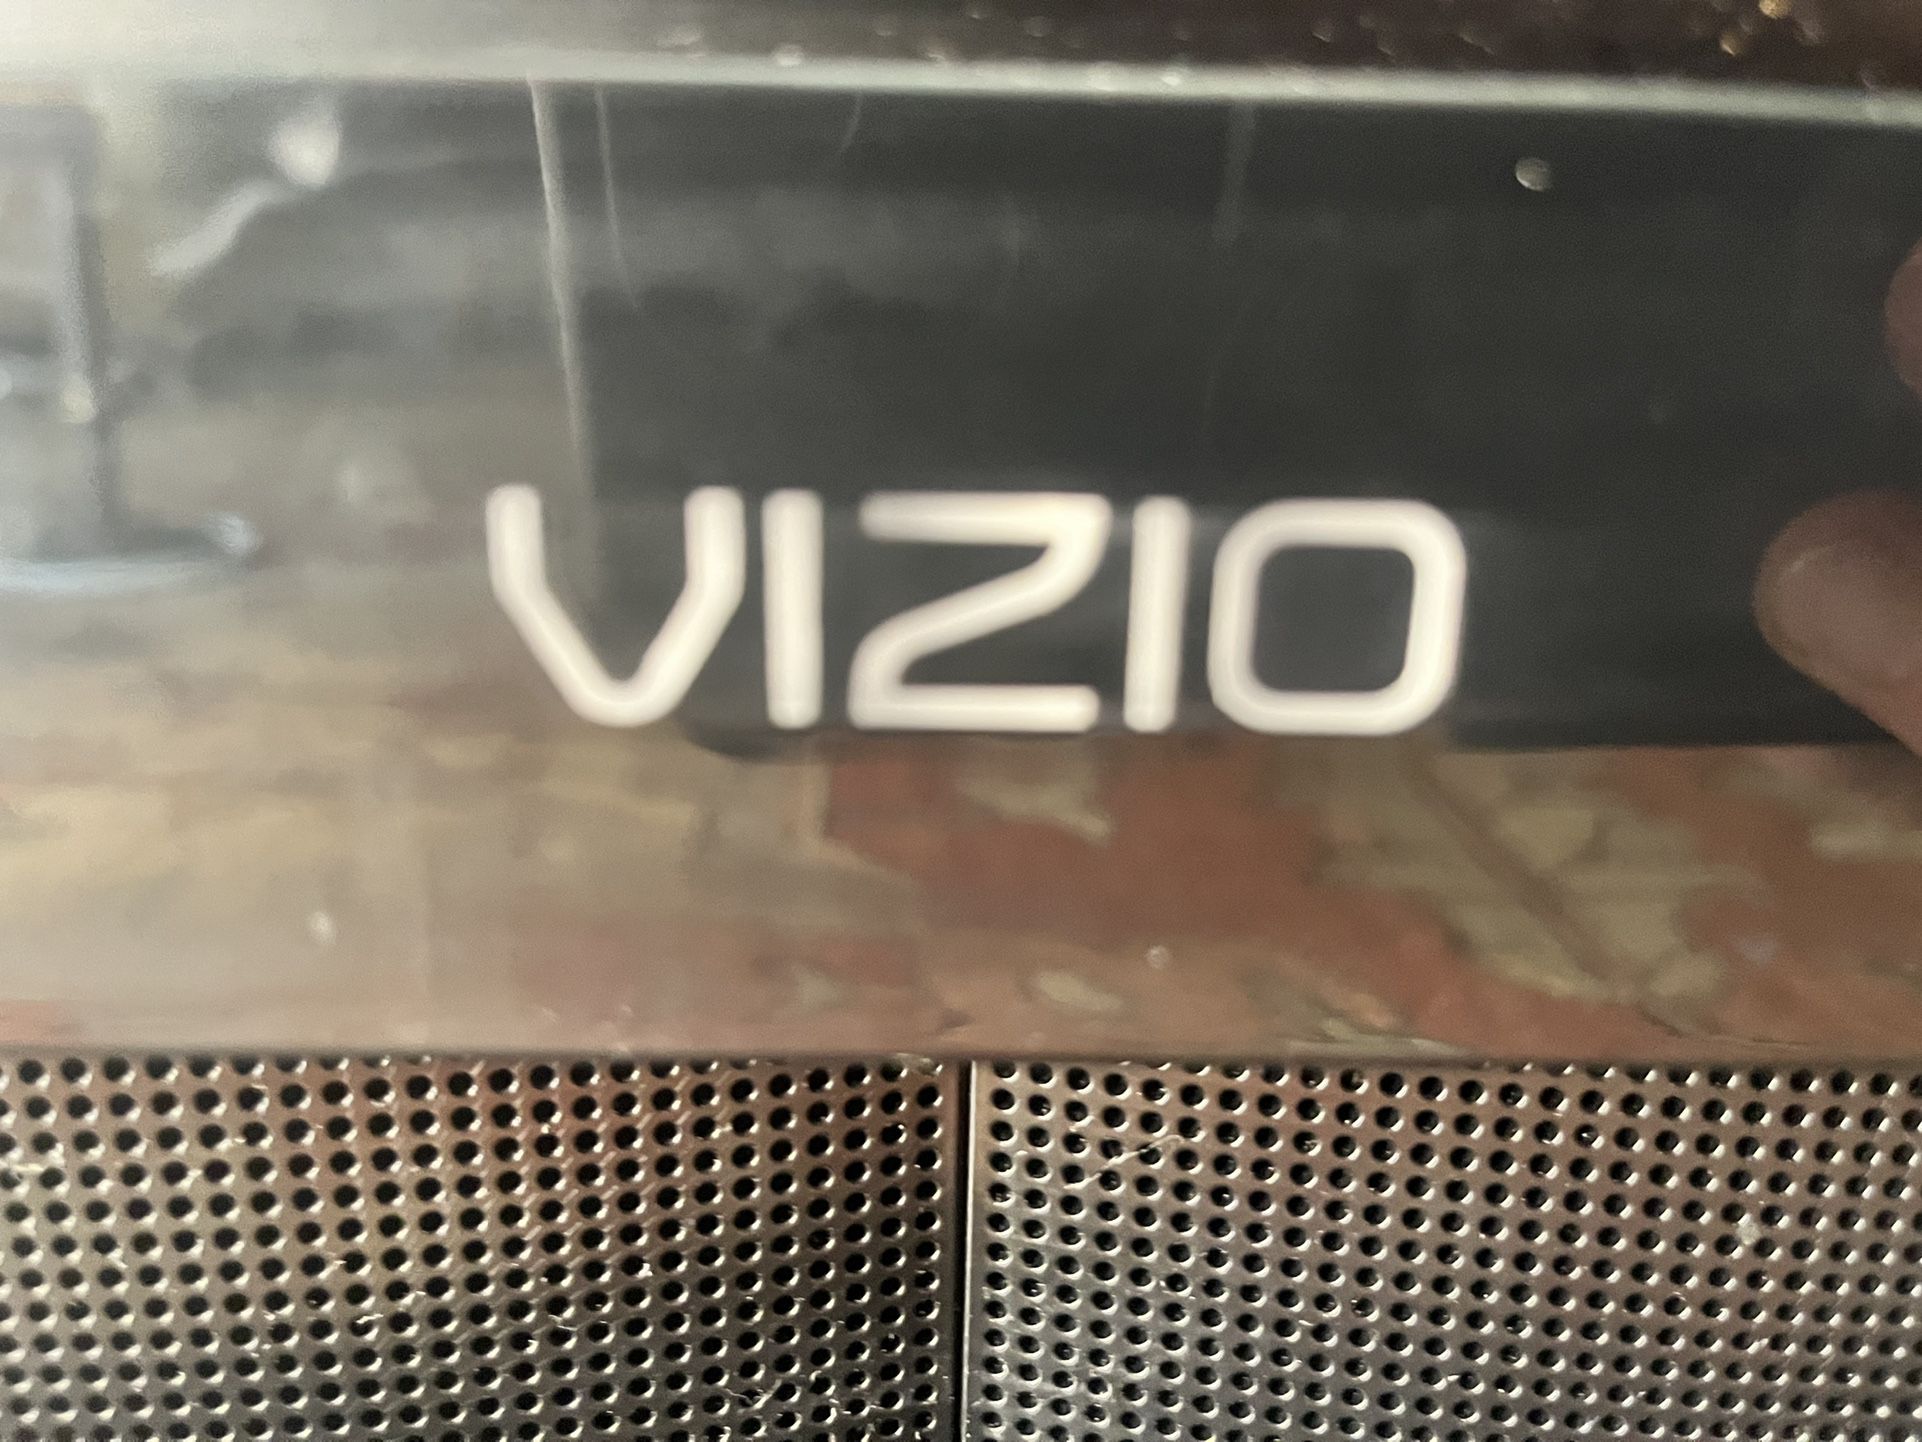 30 Inch Vizio Flatscreen Tv, No Remote, Works Perfectly 